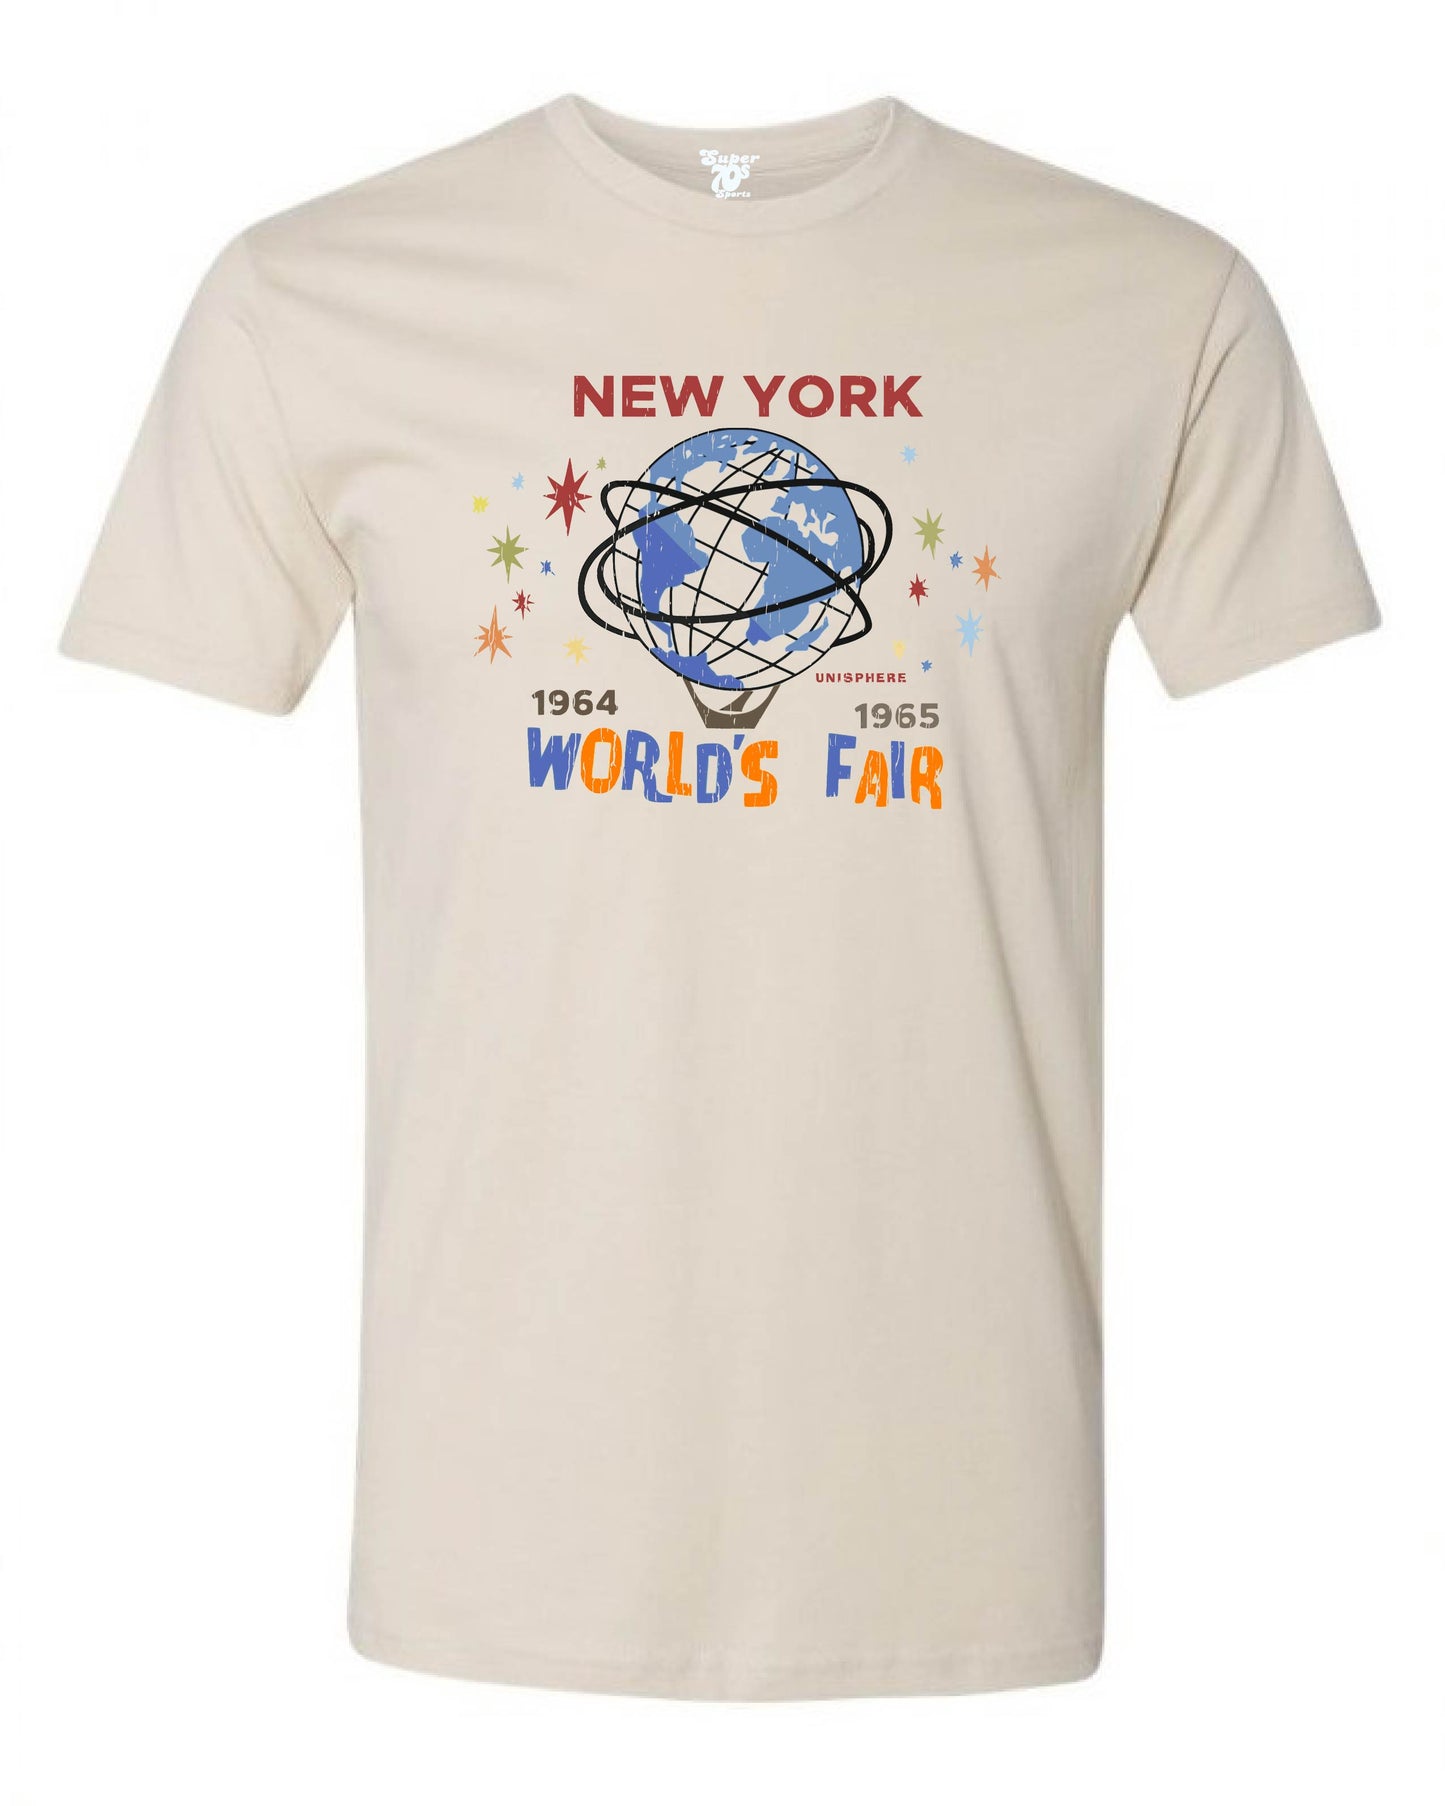 New York World's Fair Tee